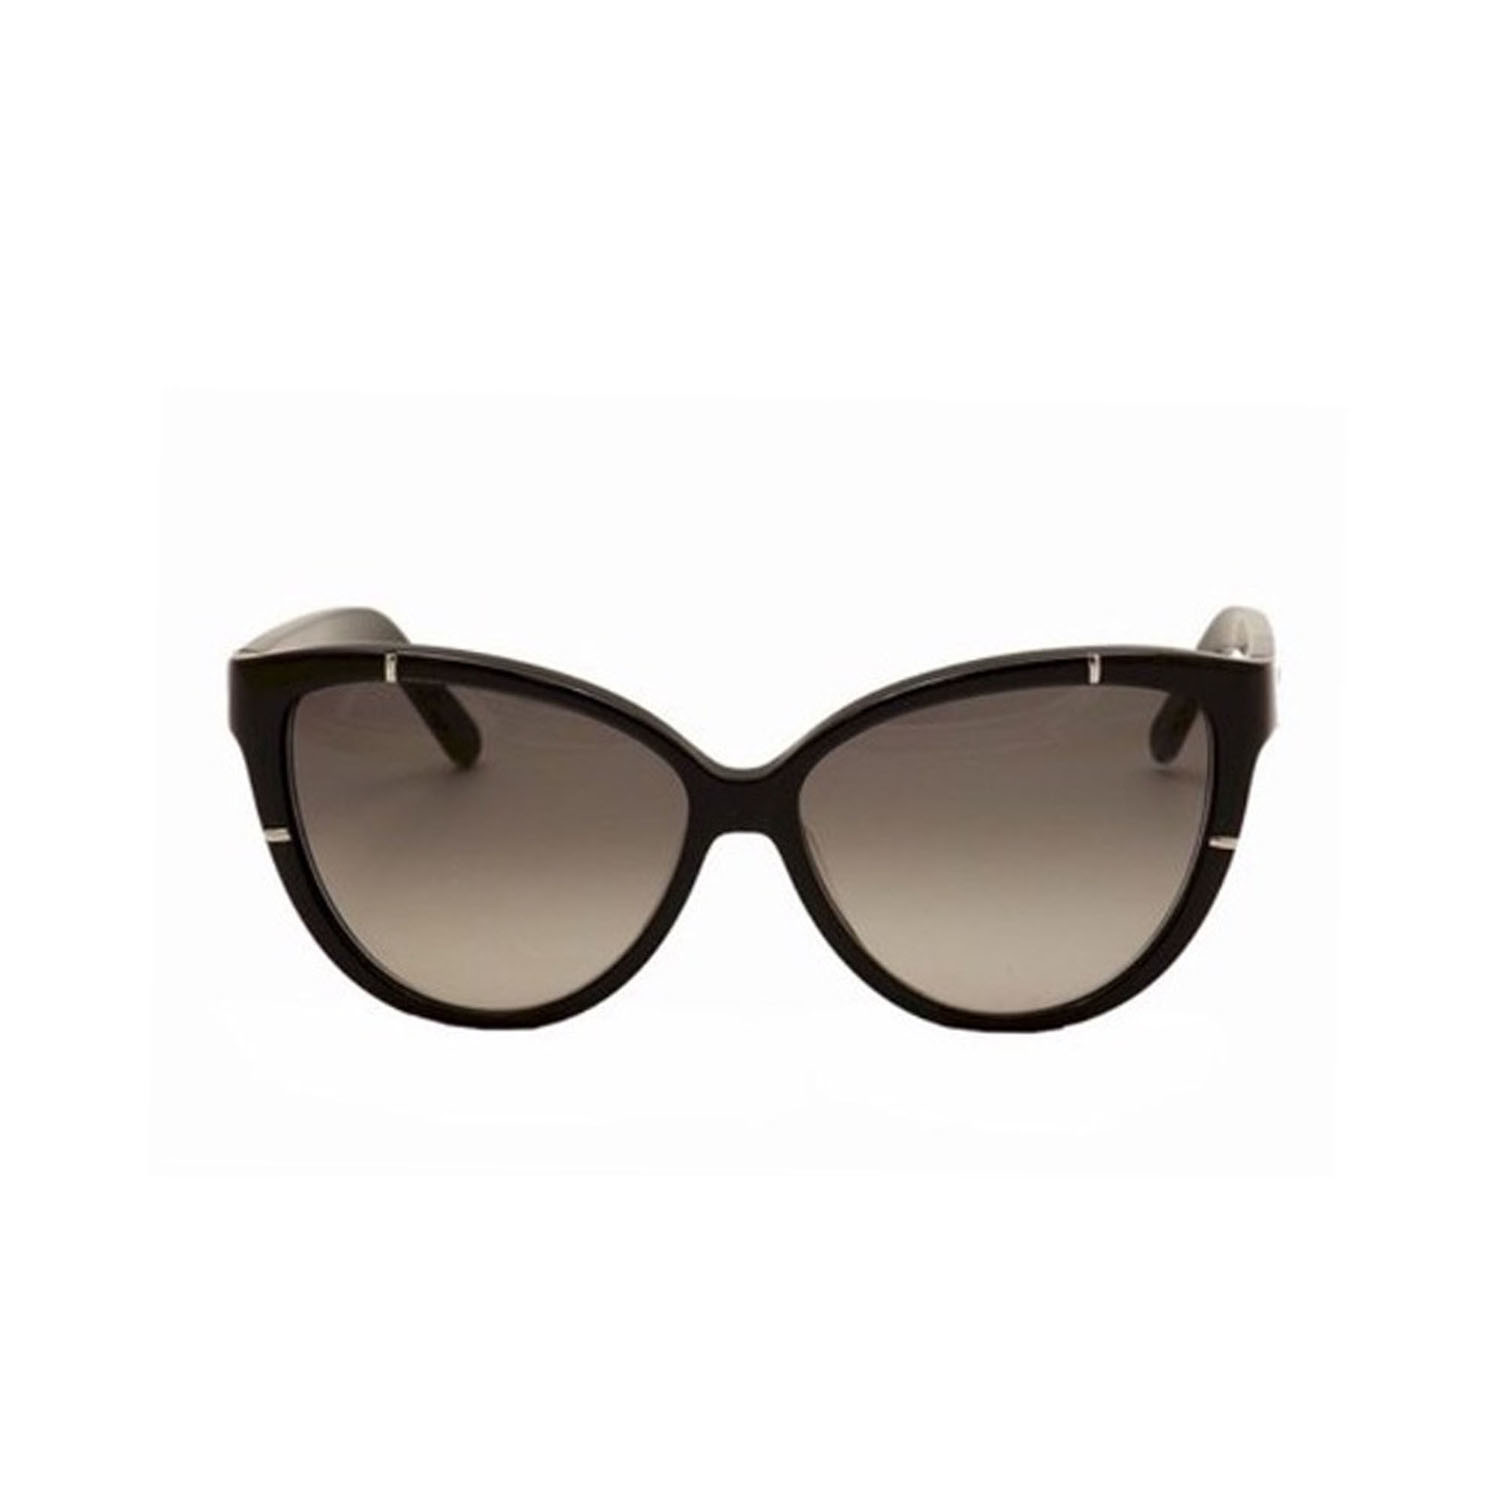 Chloe // Women's Sunglasses // Black + Gray - Women's Designer ...